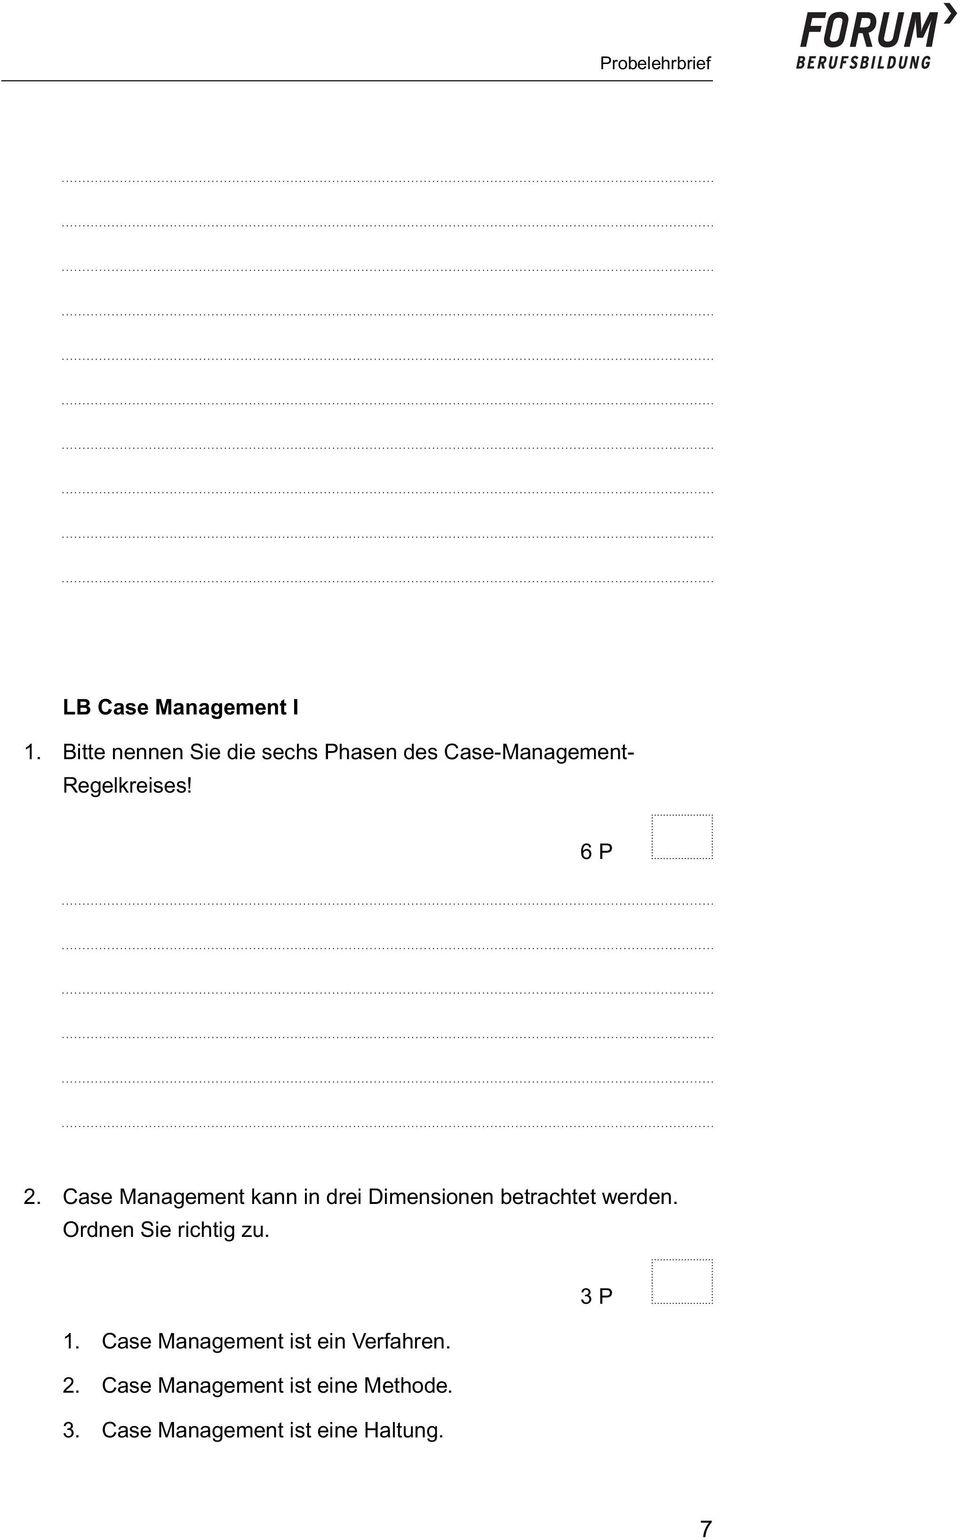 Case Management kann in drei Dimensionen betrachtet werden.